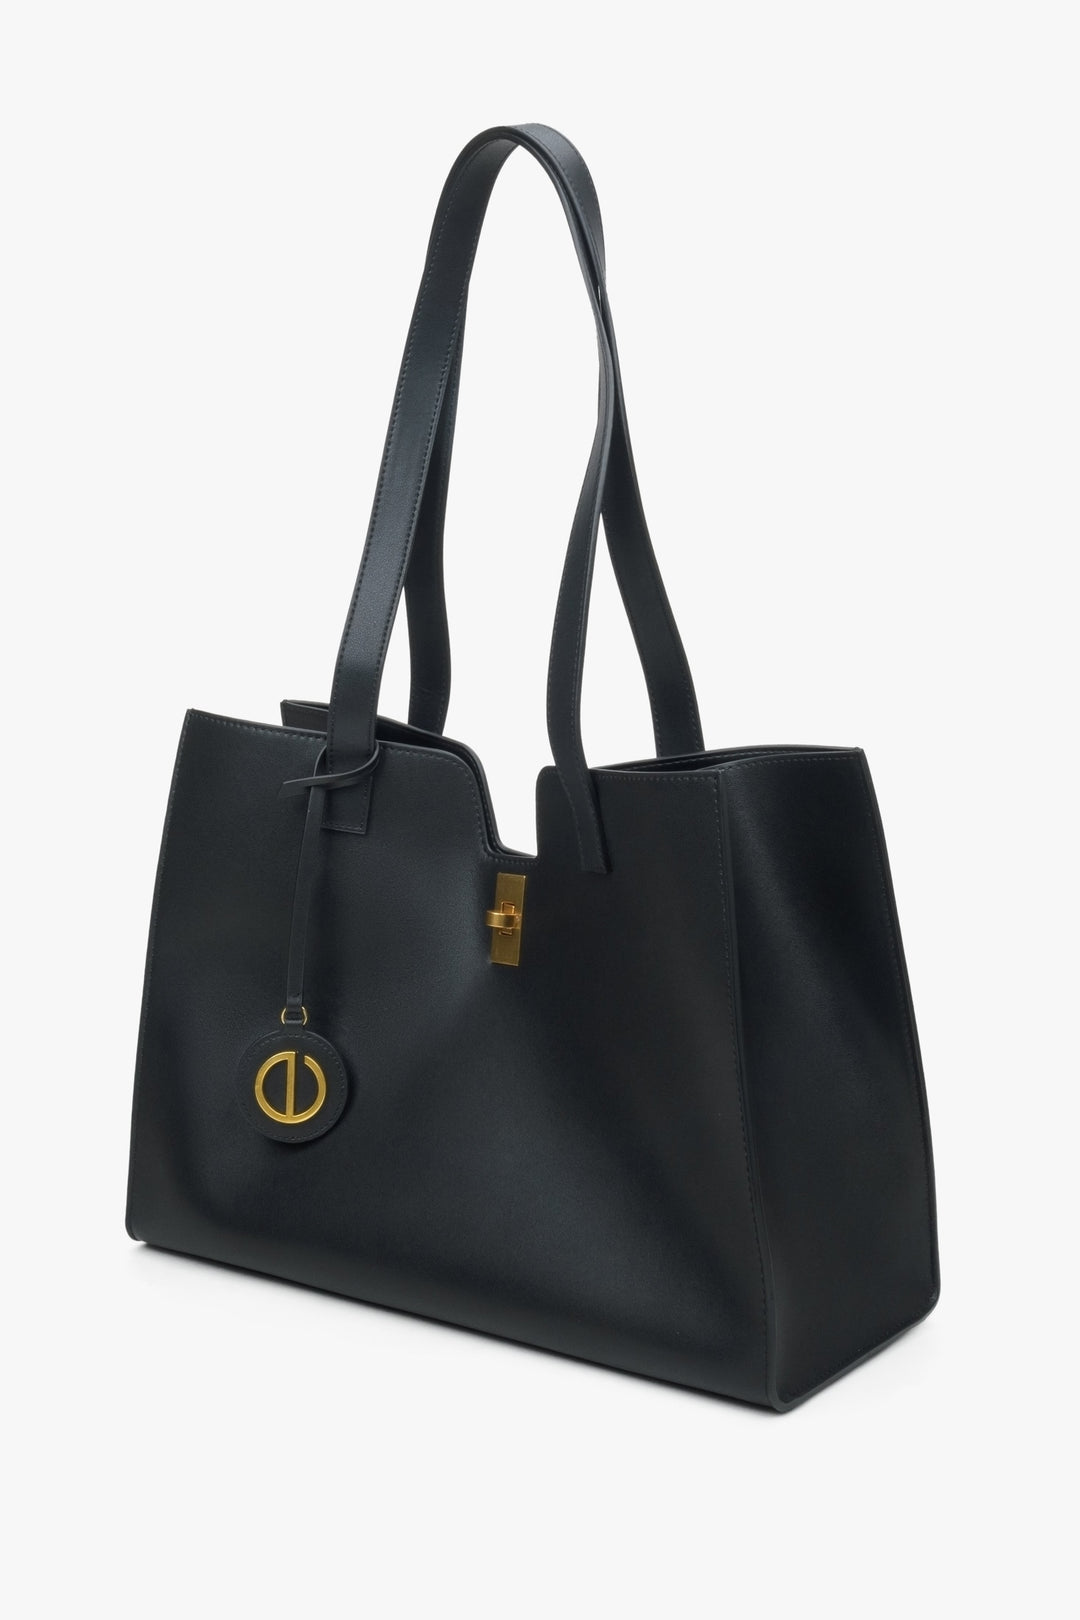 Women's black leather shopper bag by Estro.